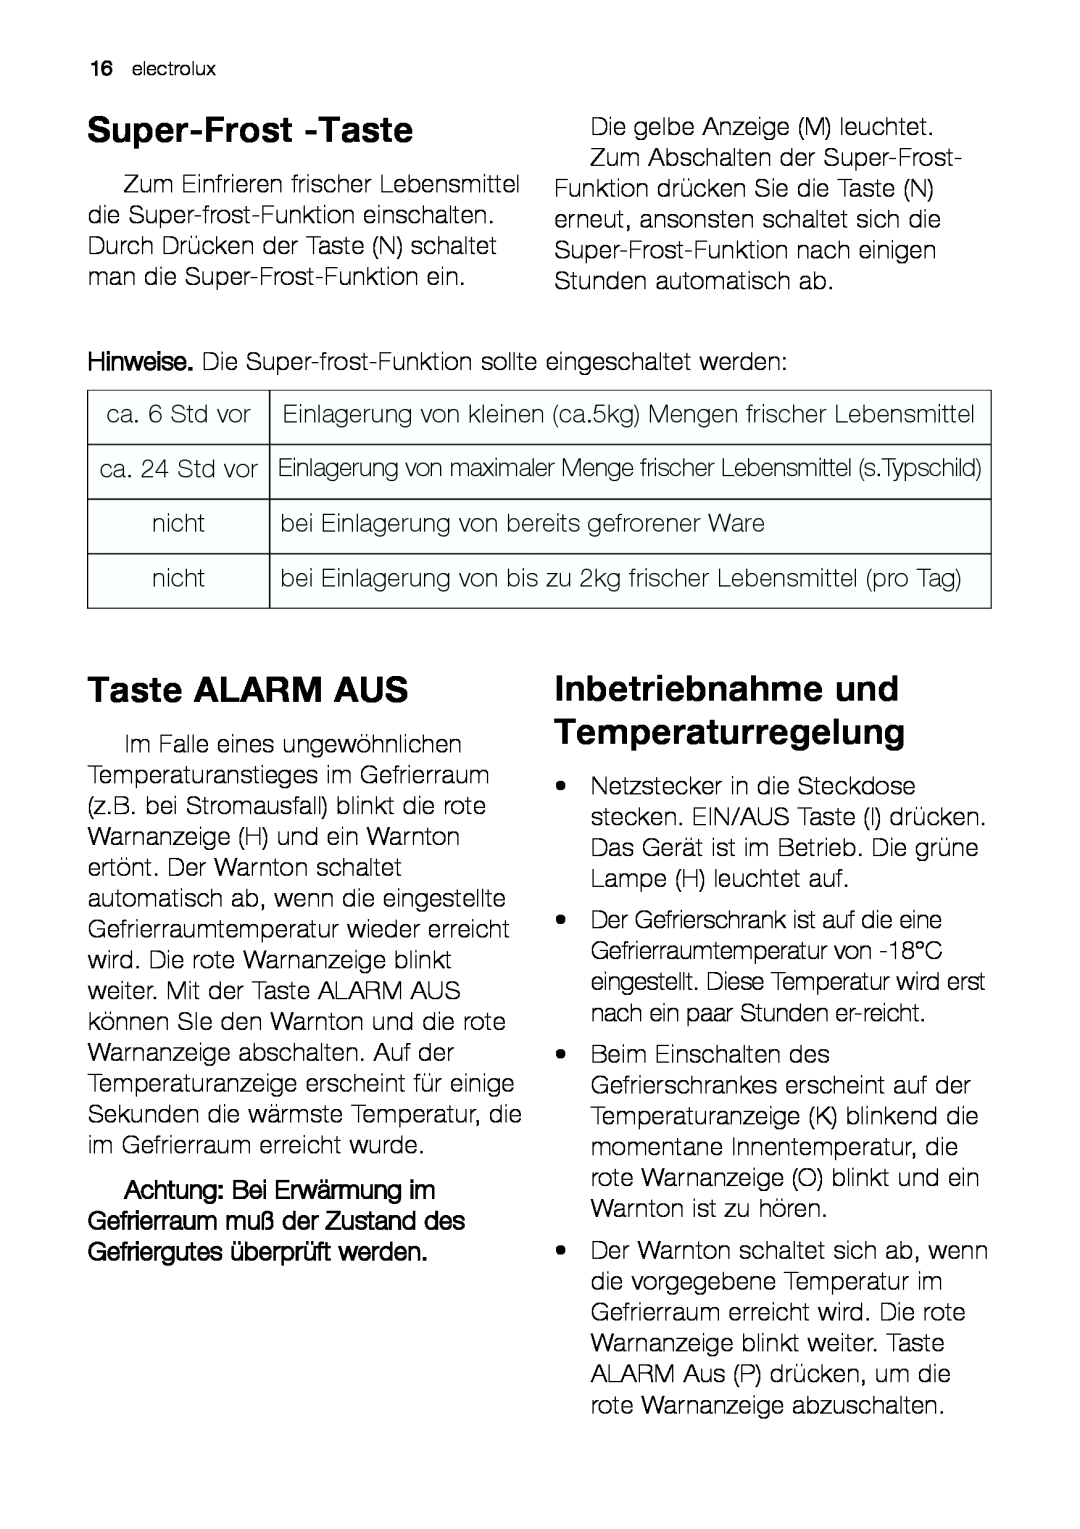 Electrolux JCZ 94181 manual Super-Frost -Taste, Taste ALARM AUS, Inbetriebnahme und Temperaturregelung 